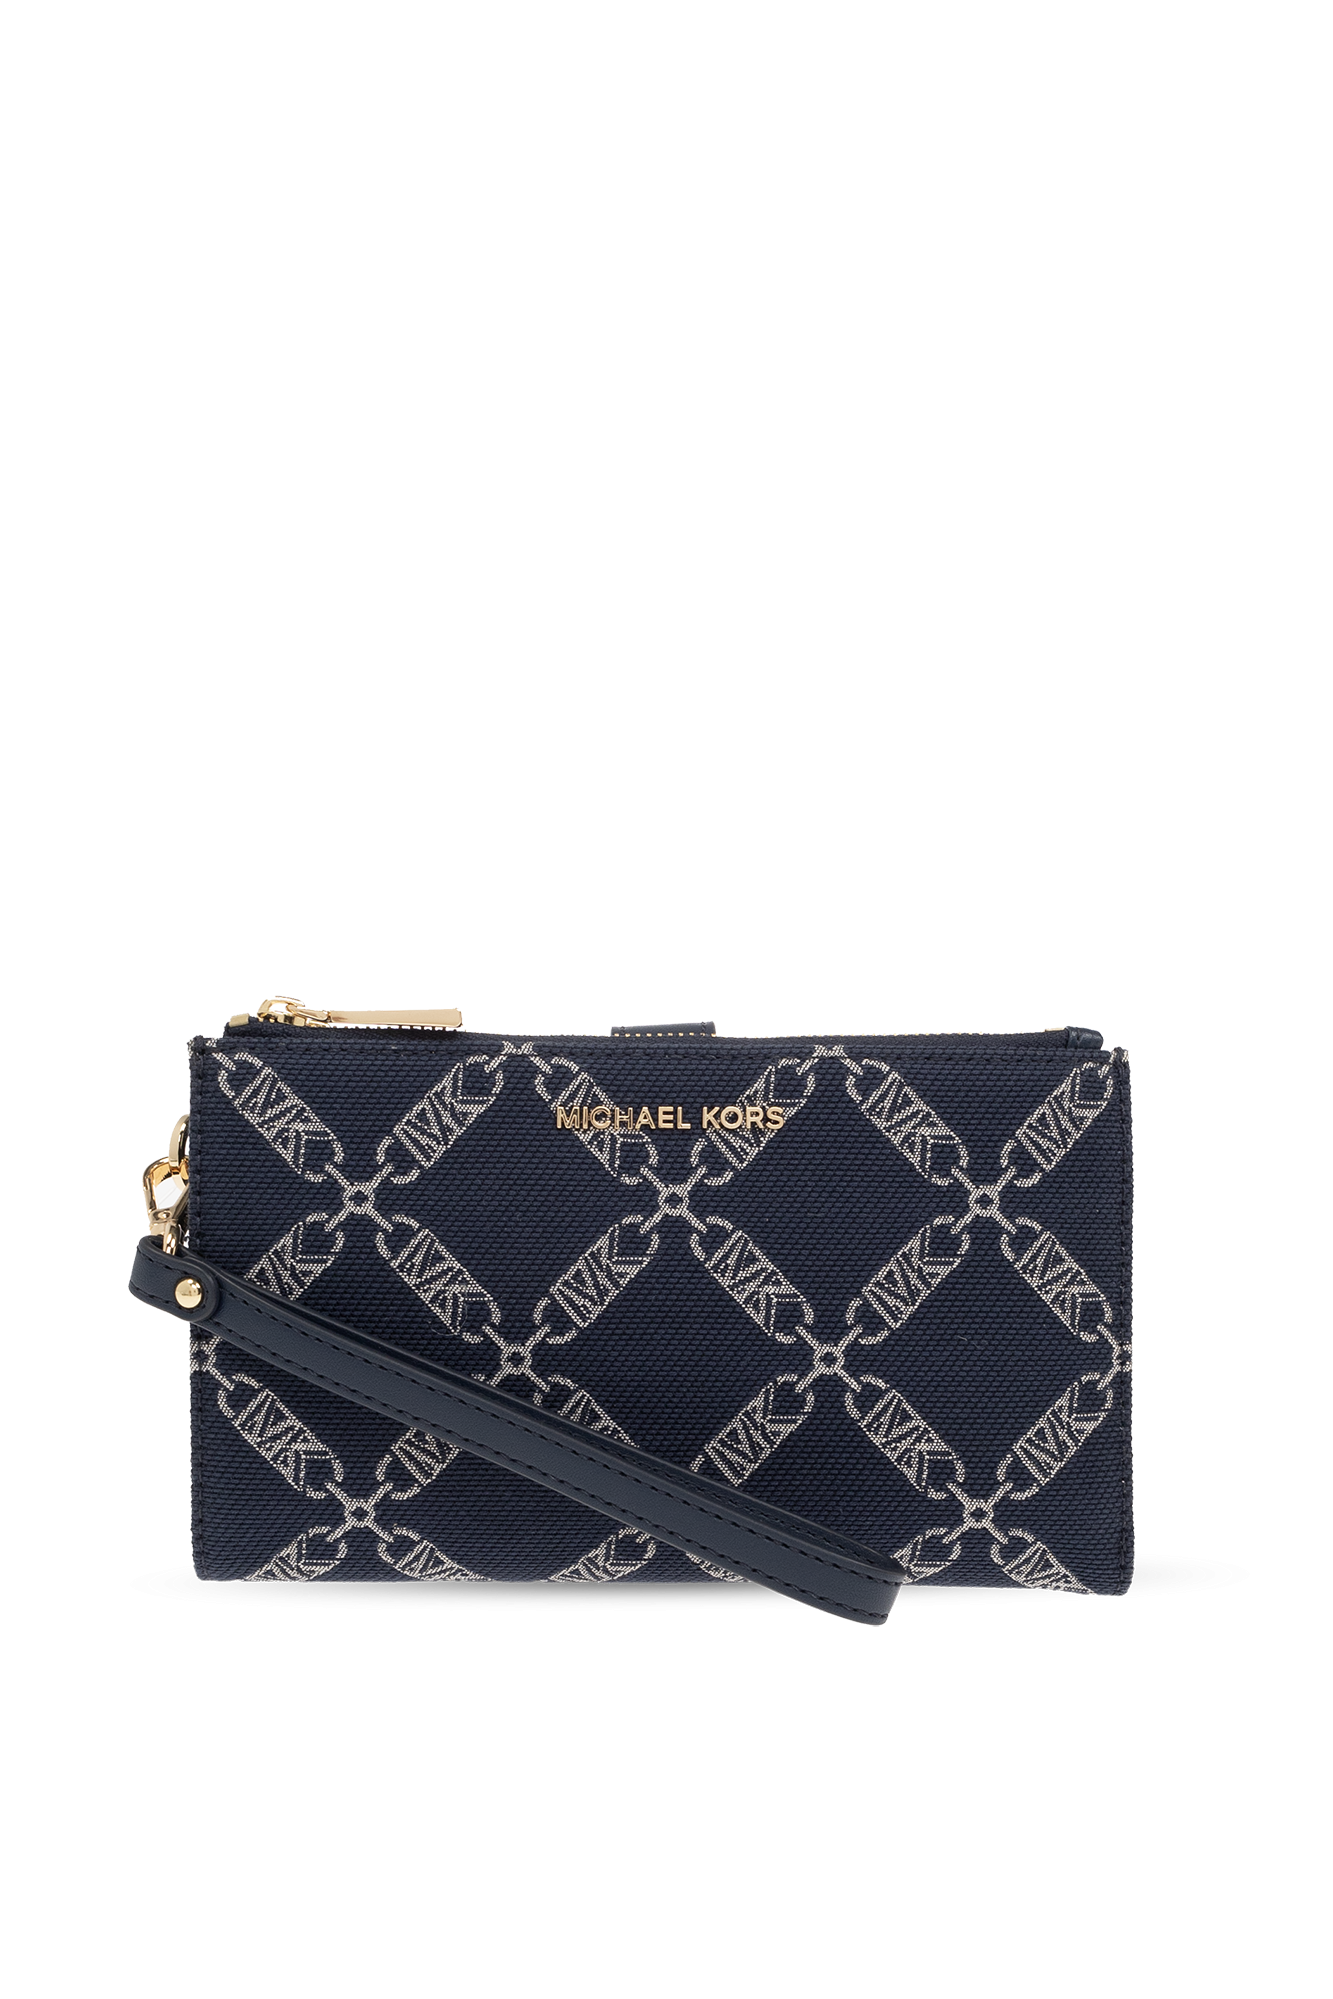 Buy Trendy Ladies Hand Bag Pattern 29 Online - Get 47% Off